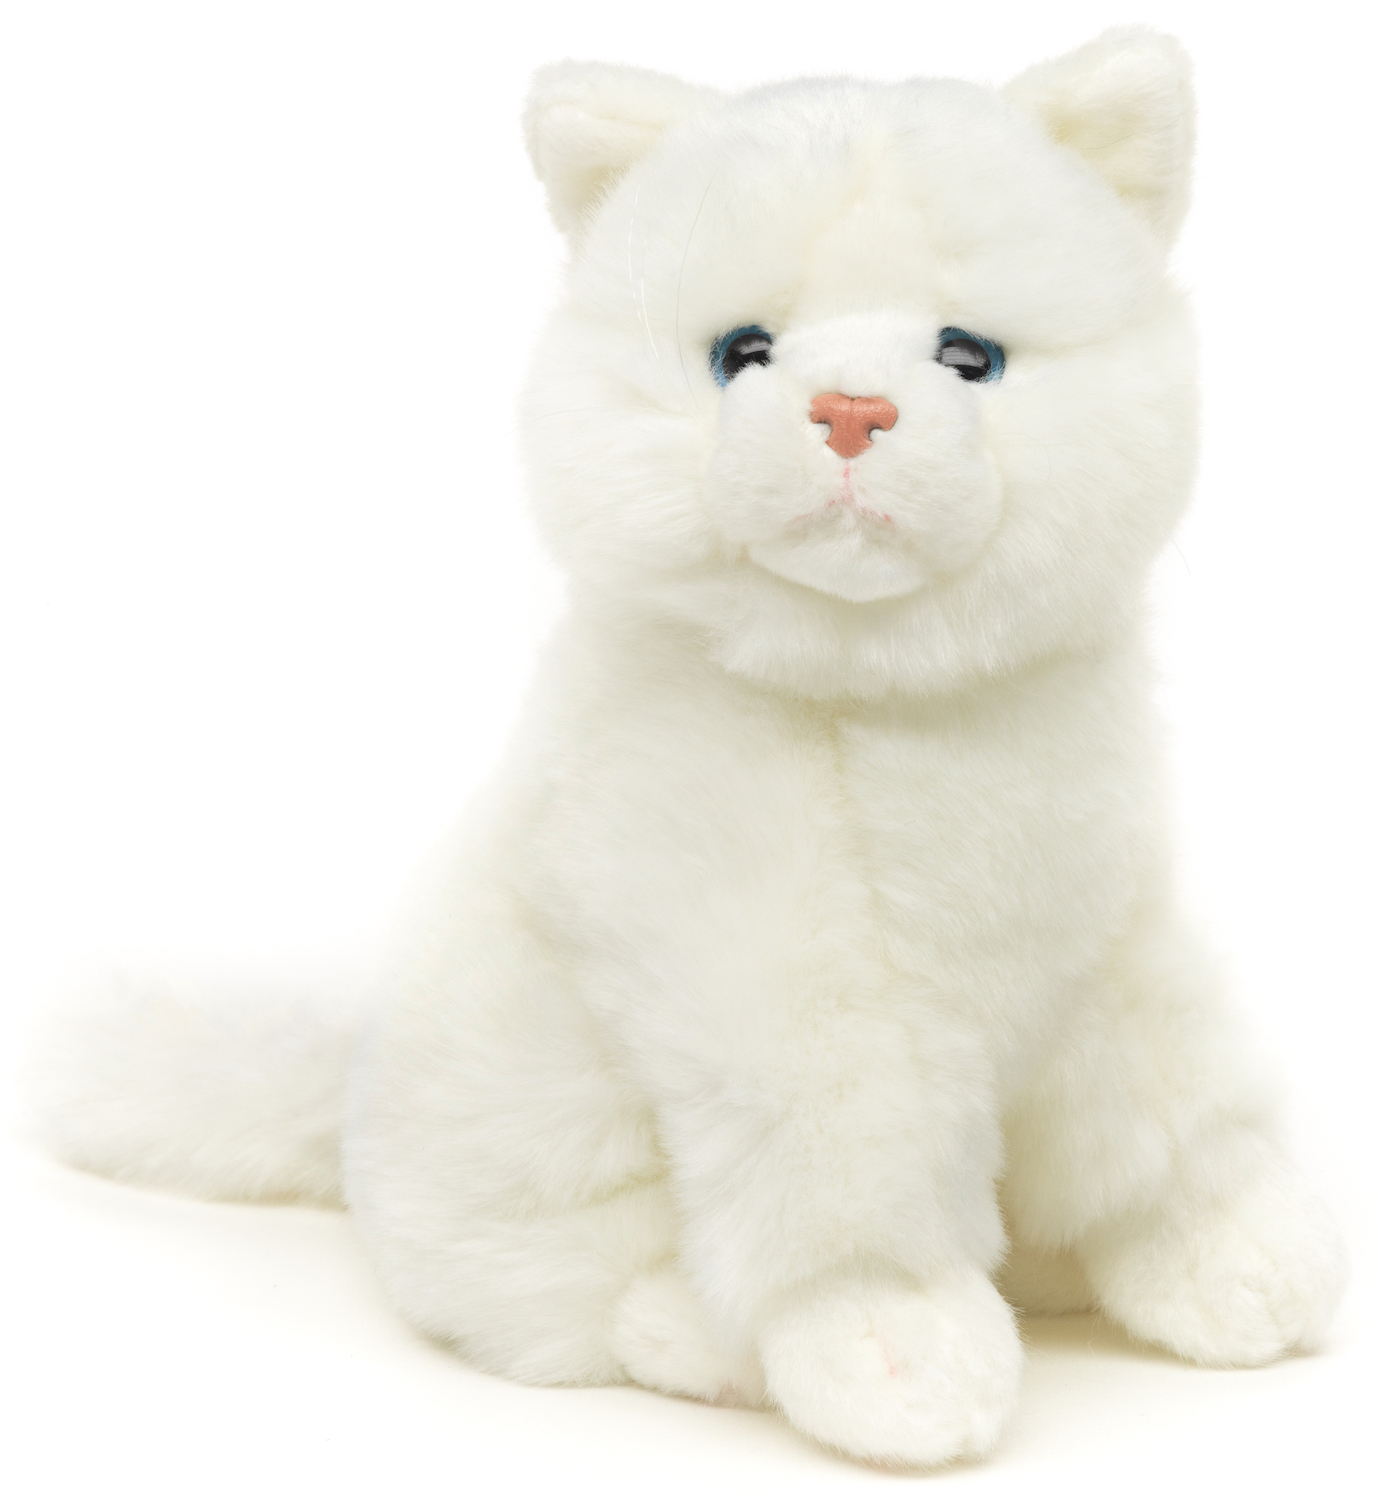 Cat white, sitting